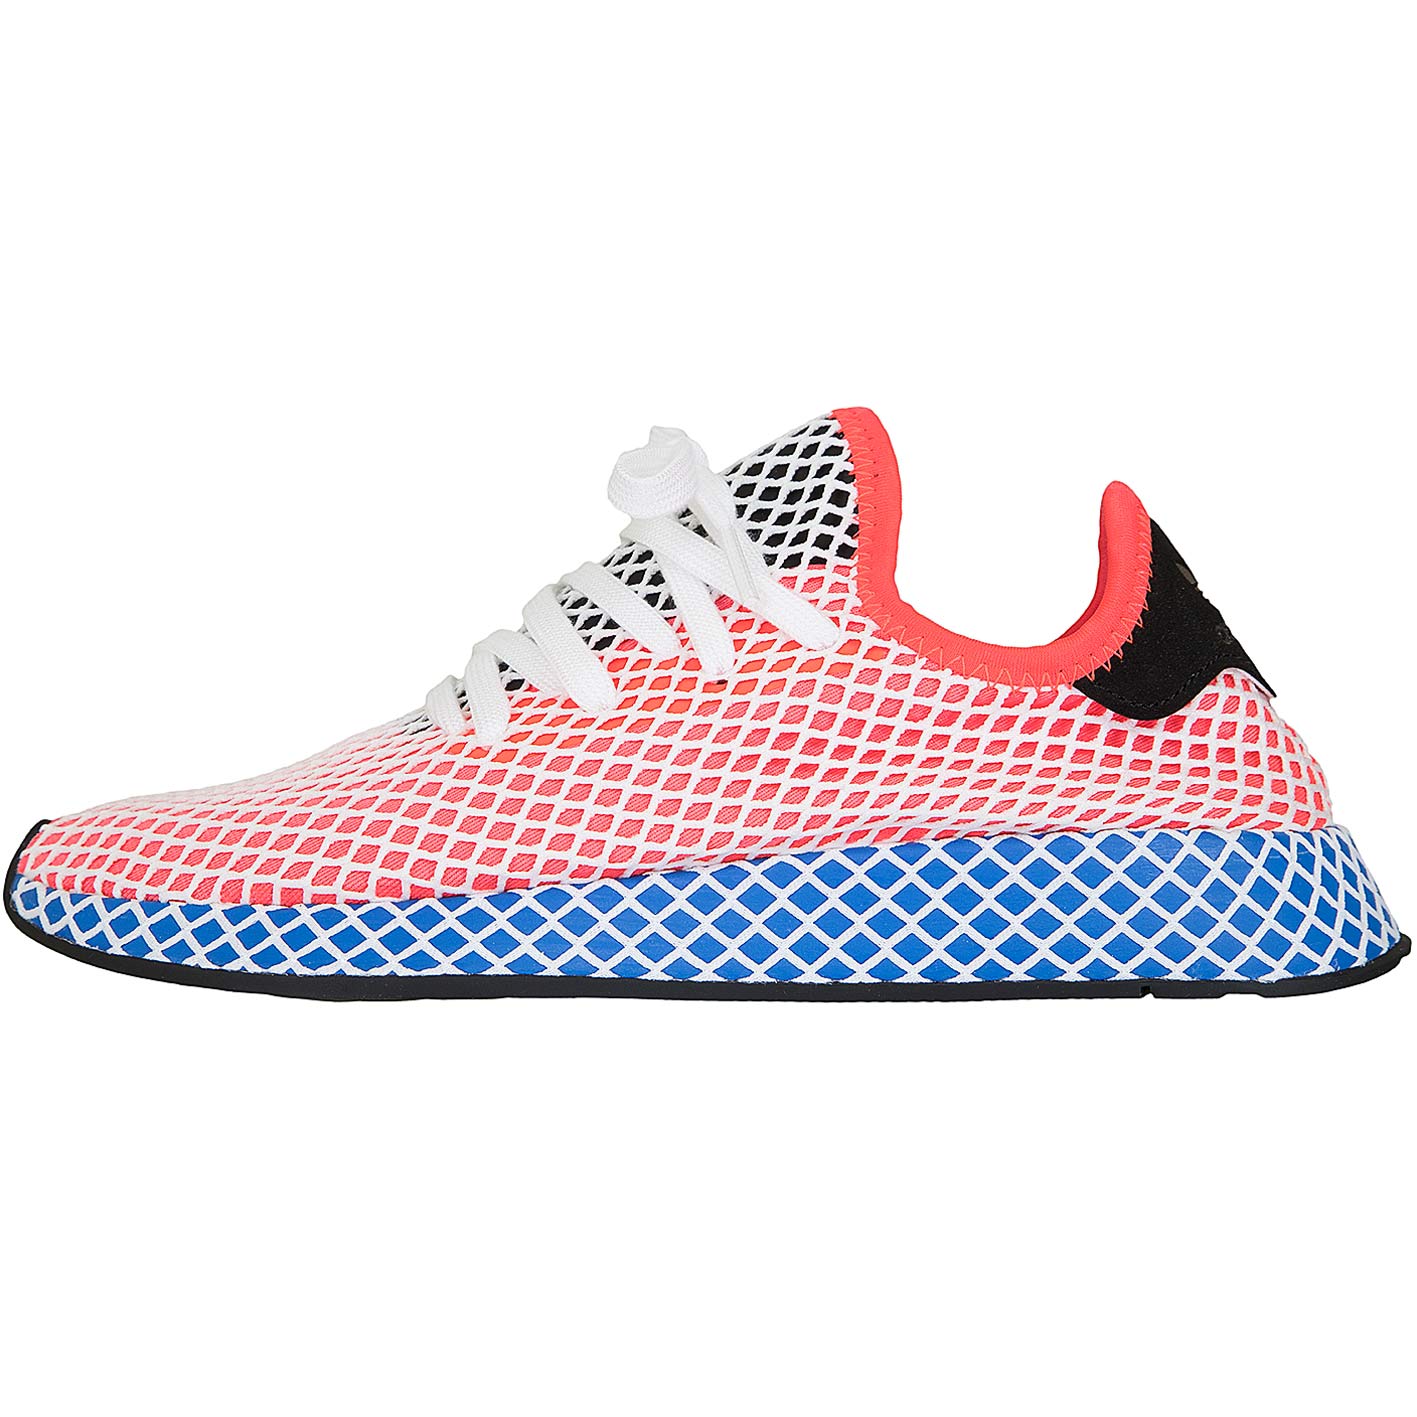 ☆ Adidas Originals Sneaker Deerupt Runner rot/blau - hier bestellen!